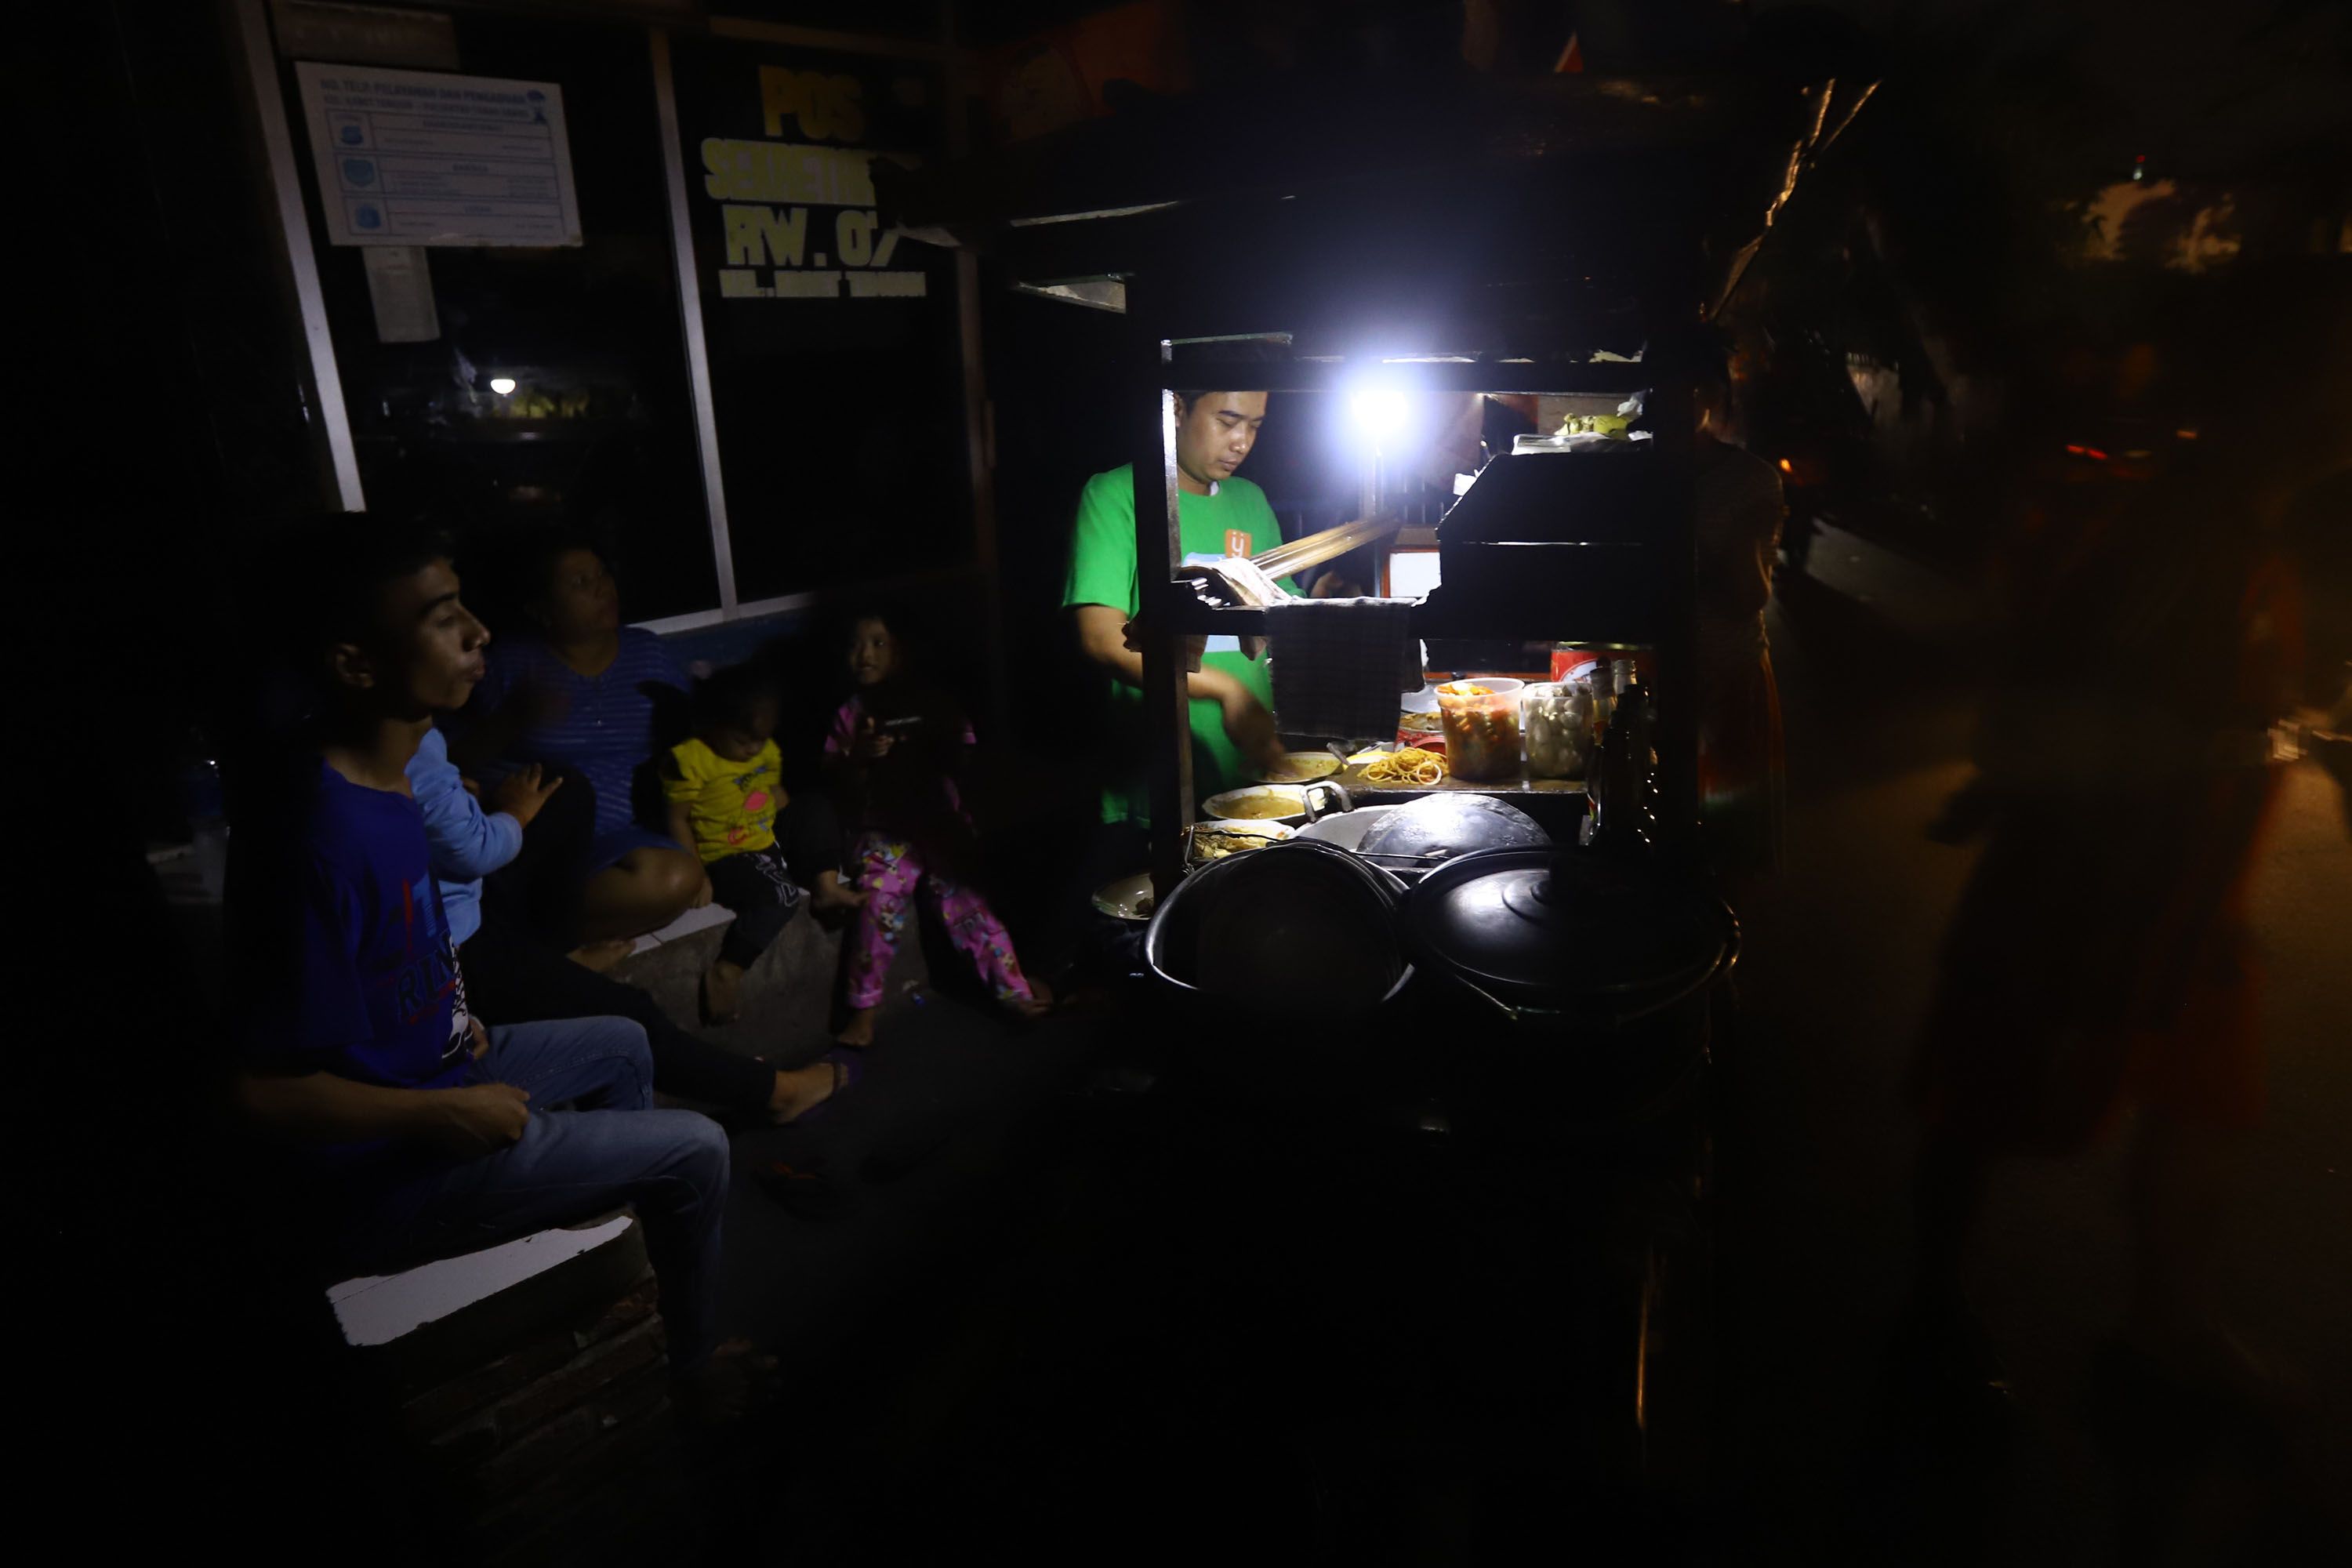 Warga beraktifitas menggunakan penerangan lilin dan lampu darurat, di wilayah Karet Tengsin Jakarta, Minggu malam (4/8/2019). Aliran listrik di Banten, Jabodetabek hingga Bandung terputus akibat adanya gangguan pada sejumlah pembangkit di Jawa. TRIBUNNEWS/HERUDIN 